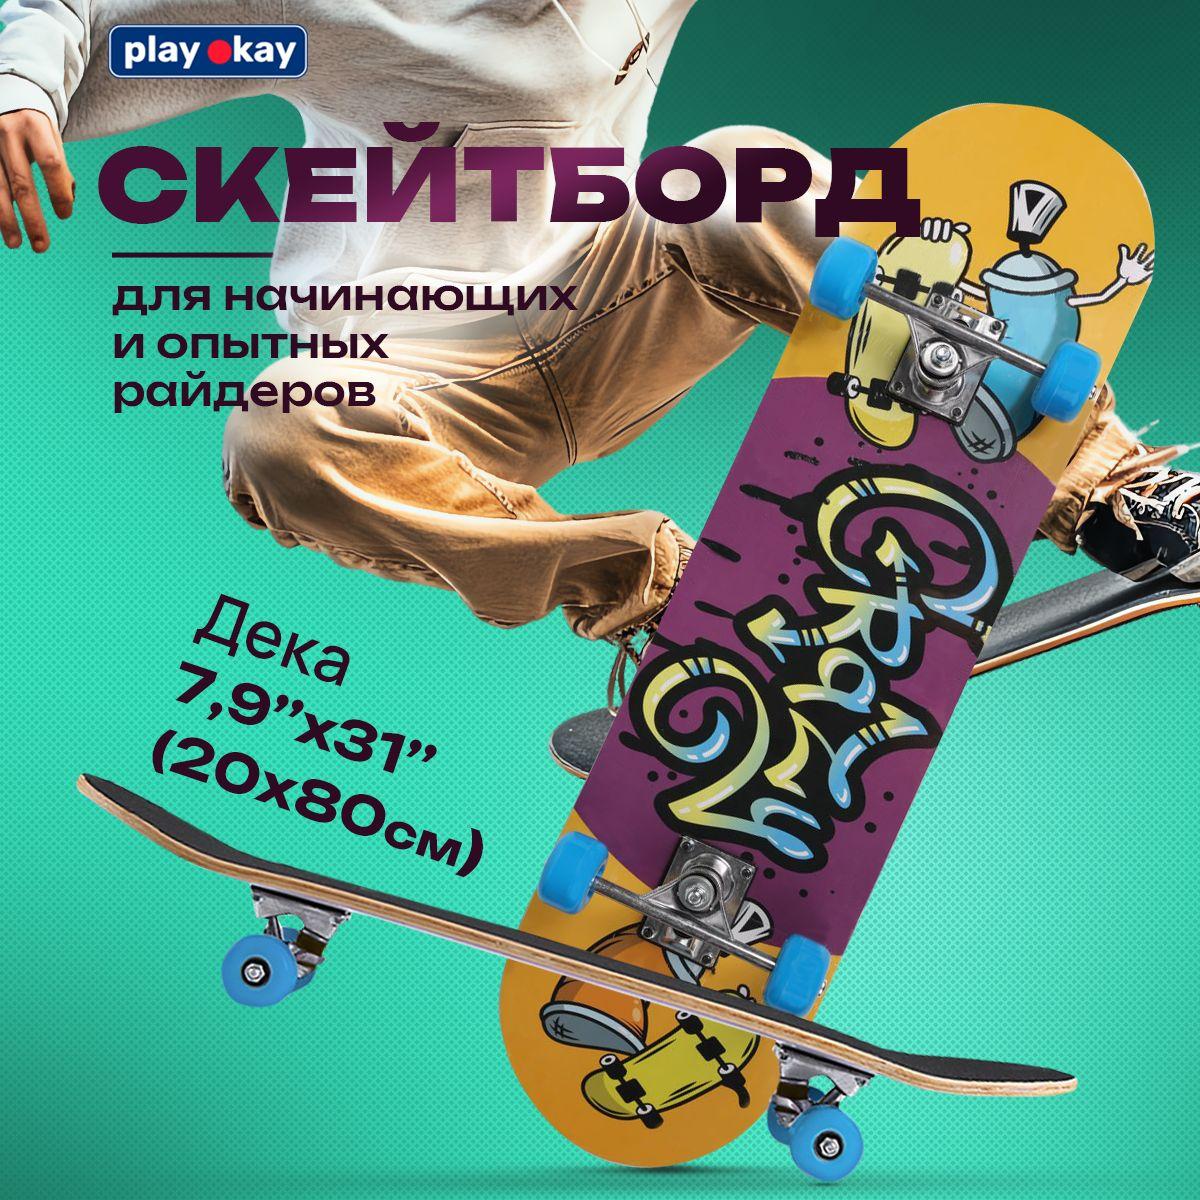 Скейт детский Play Okay для мальчиков и девочек, максимальный вес до 60 кг, трюковой, 4 колеса, желтый и фиолетовый